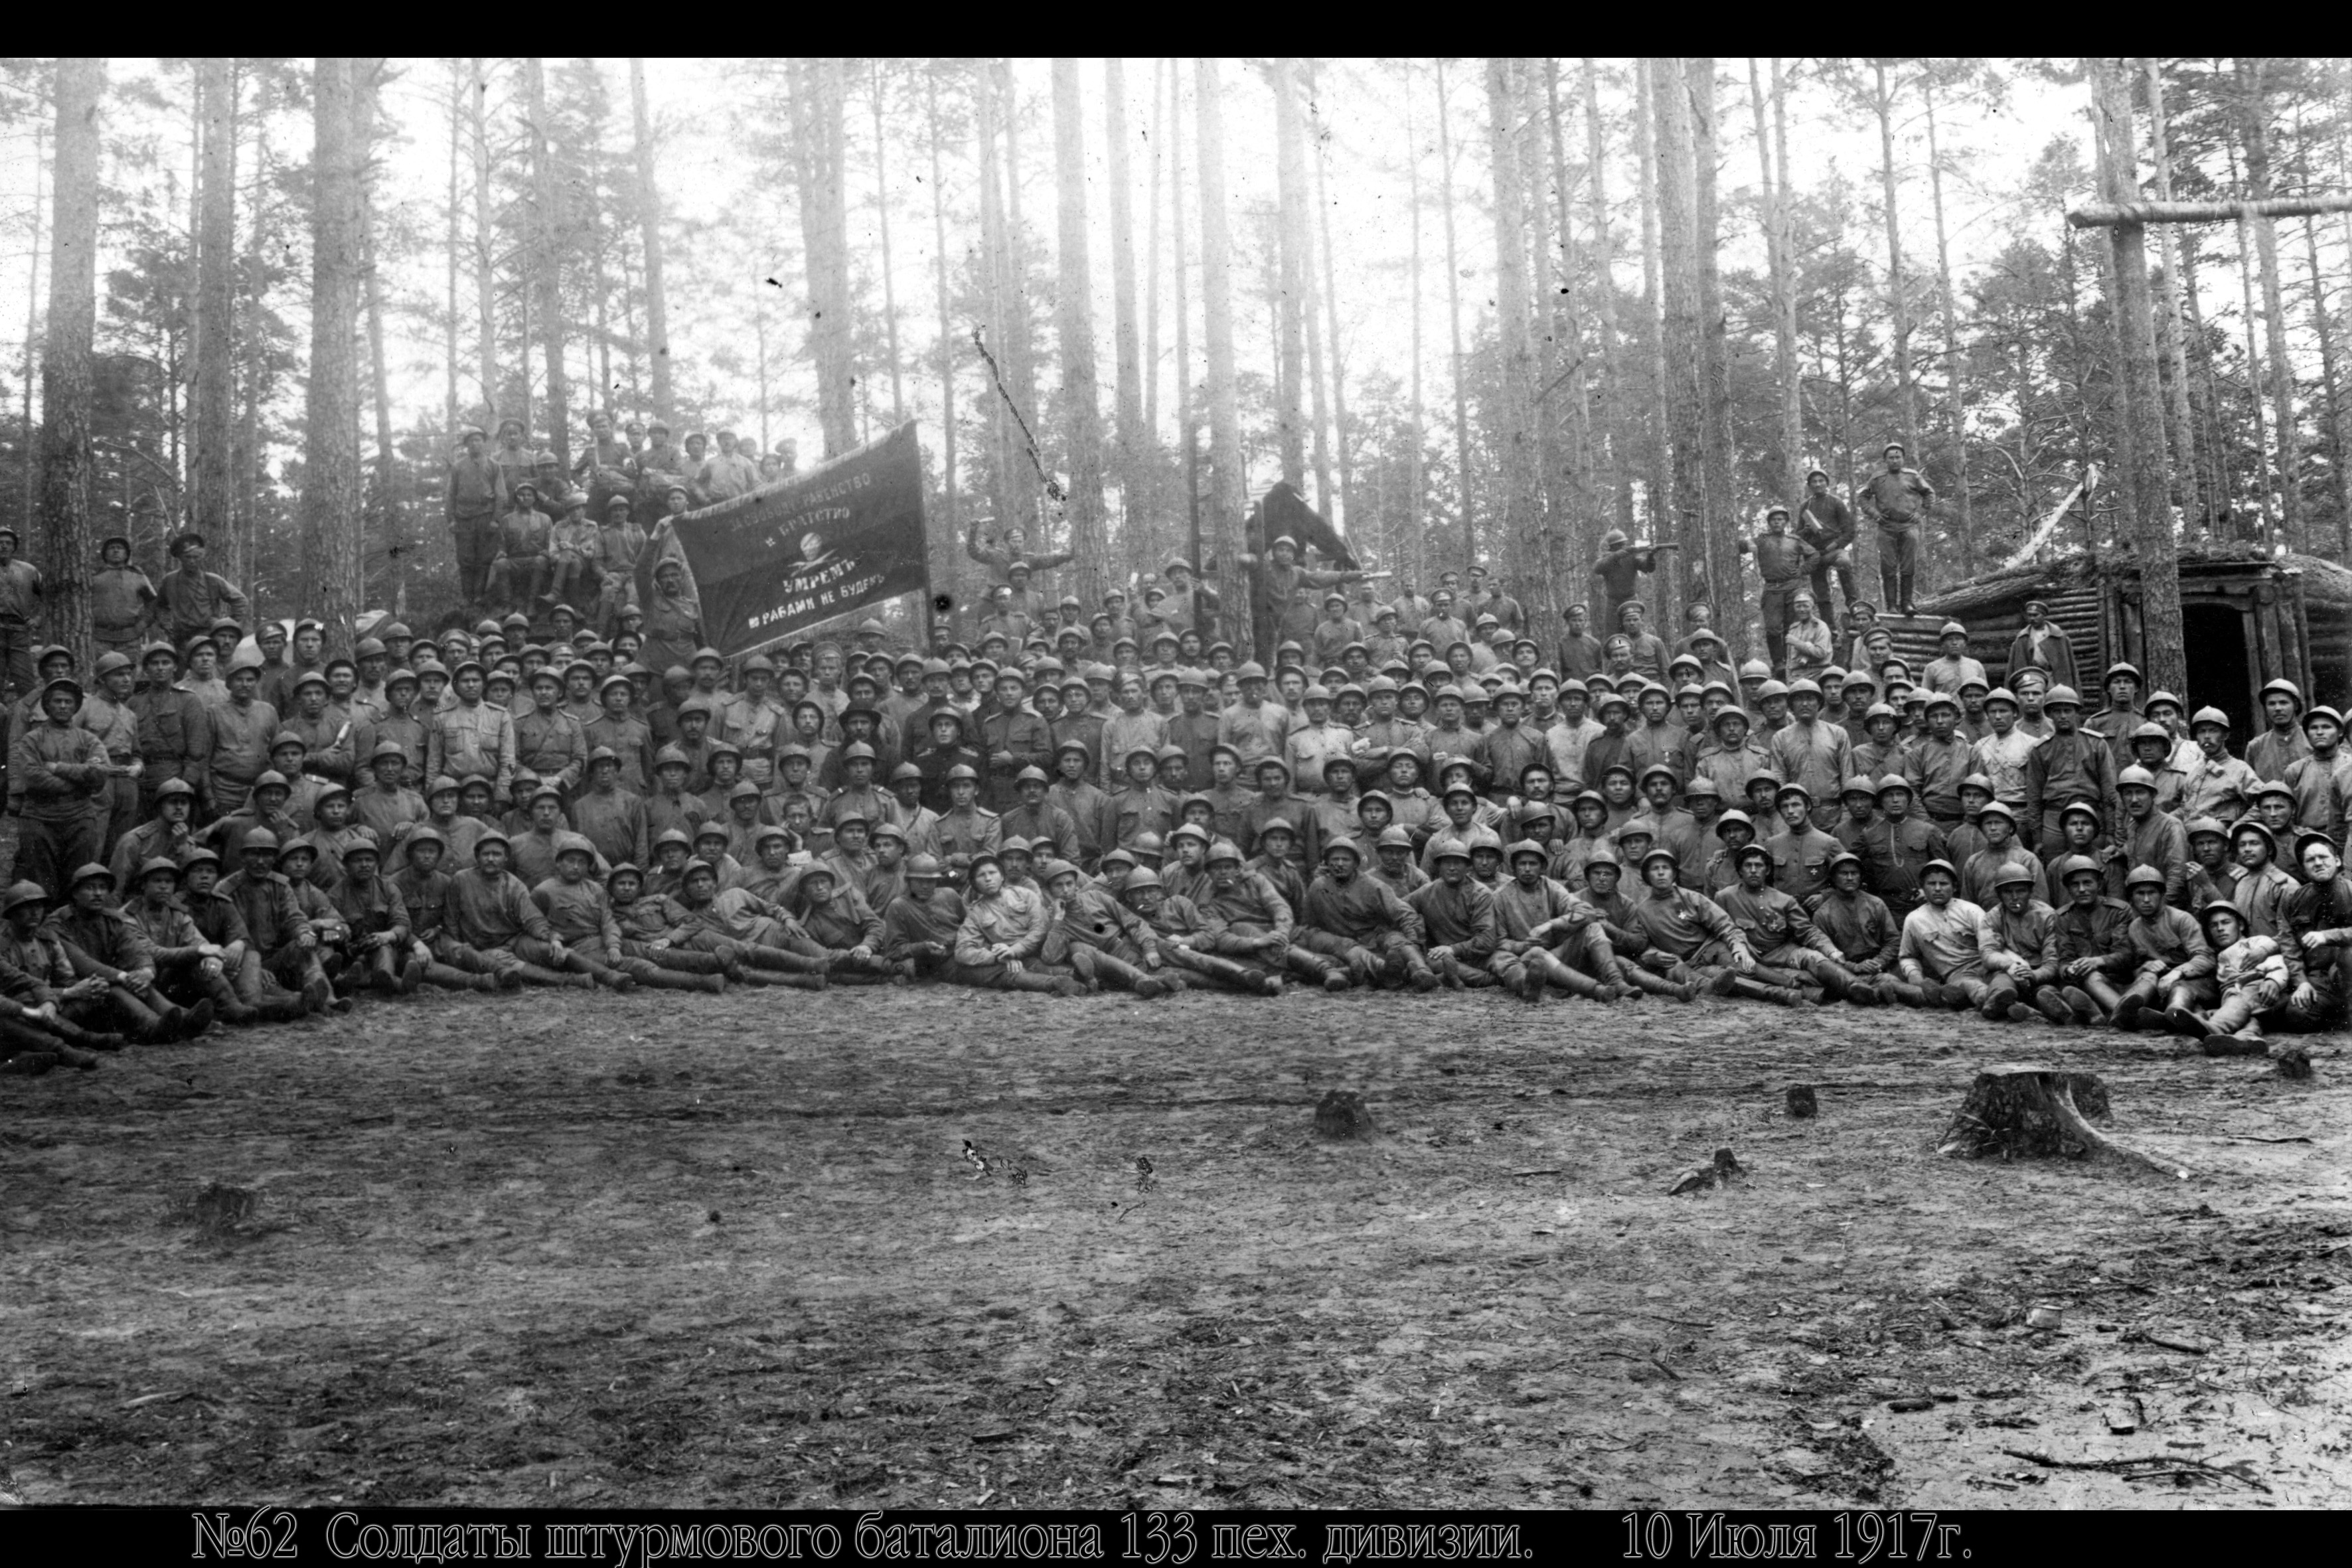 133-osios pėstininkų divizijos šturmo bataliono kareiviai. 1917 m. liepos 10 d.